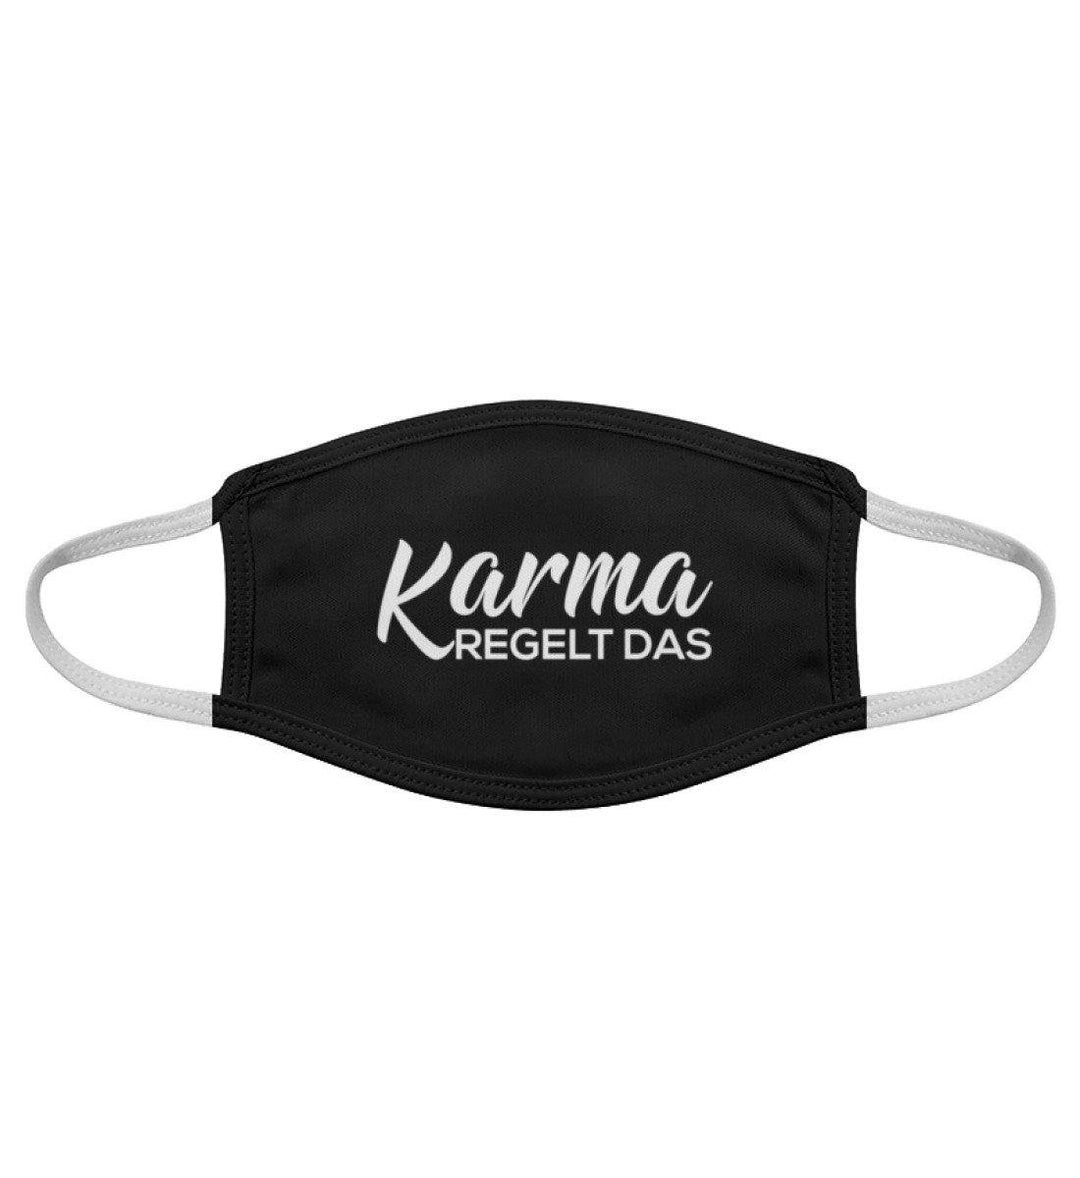 Karma regelt das - Maske  - Gesichtsmaske - Words on Shirts - Words on Shirts Sag es mit dem Mittelfinger Shirts Hoodies Sweatshirt Taschen Gymsack Spruch Sprüche Statement